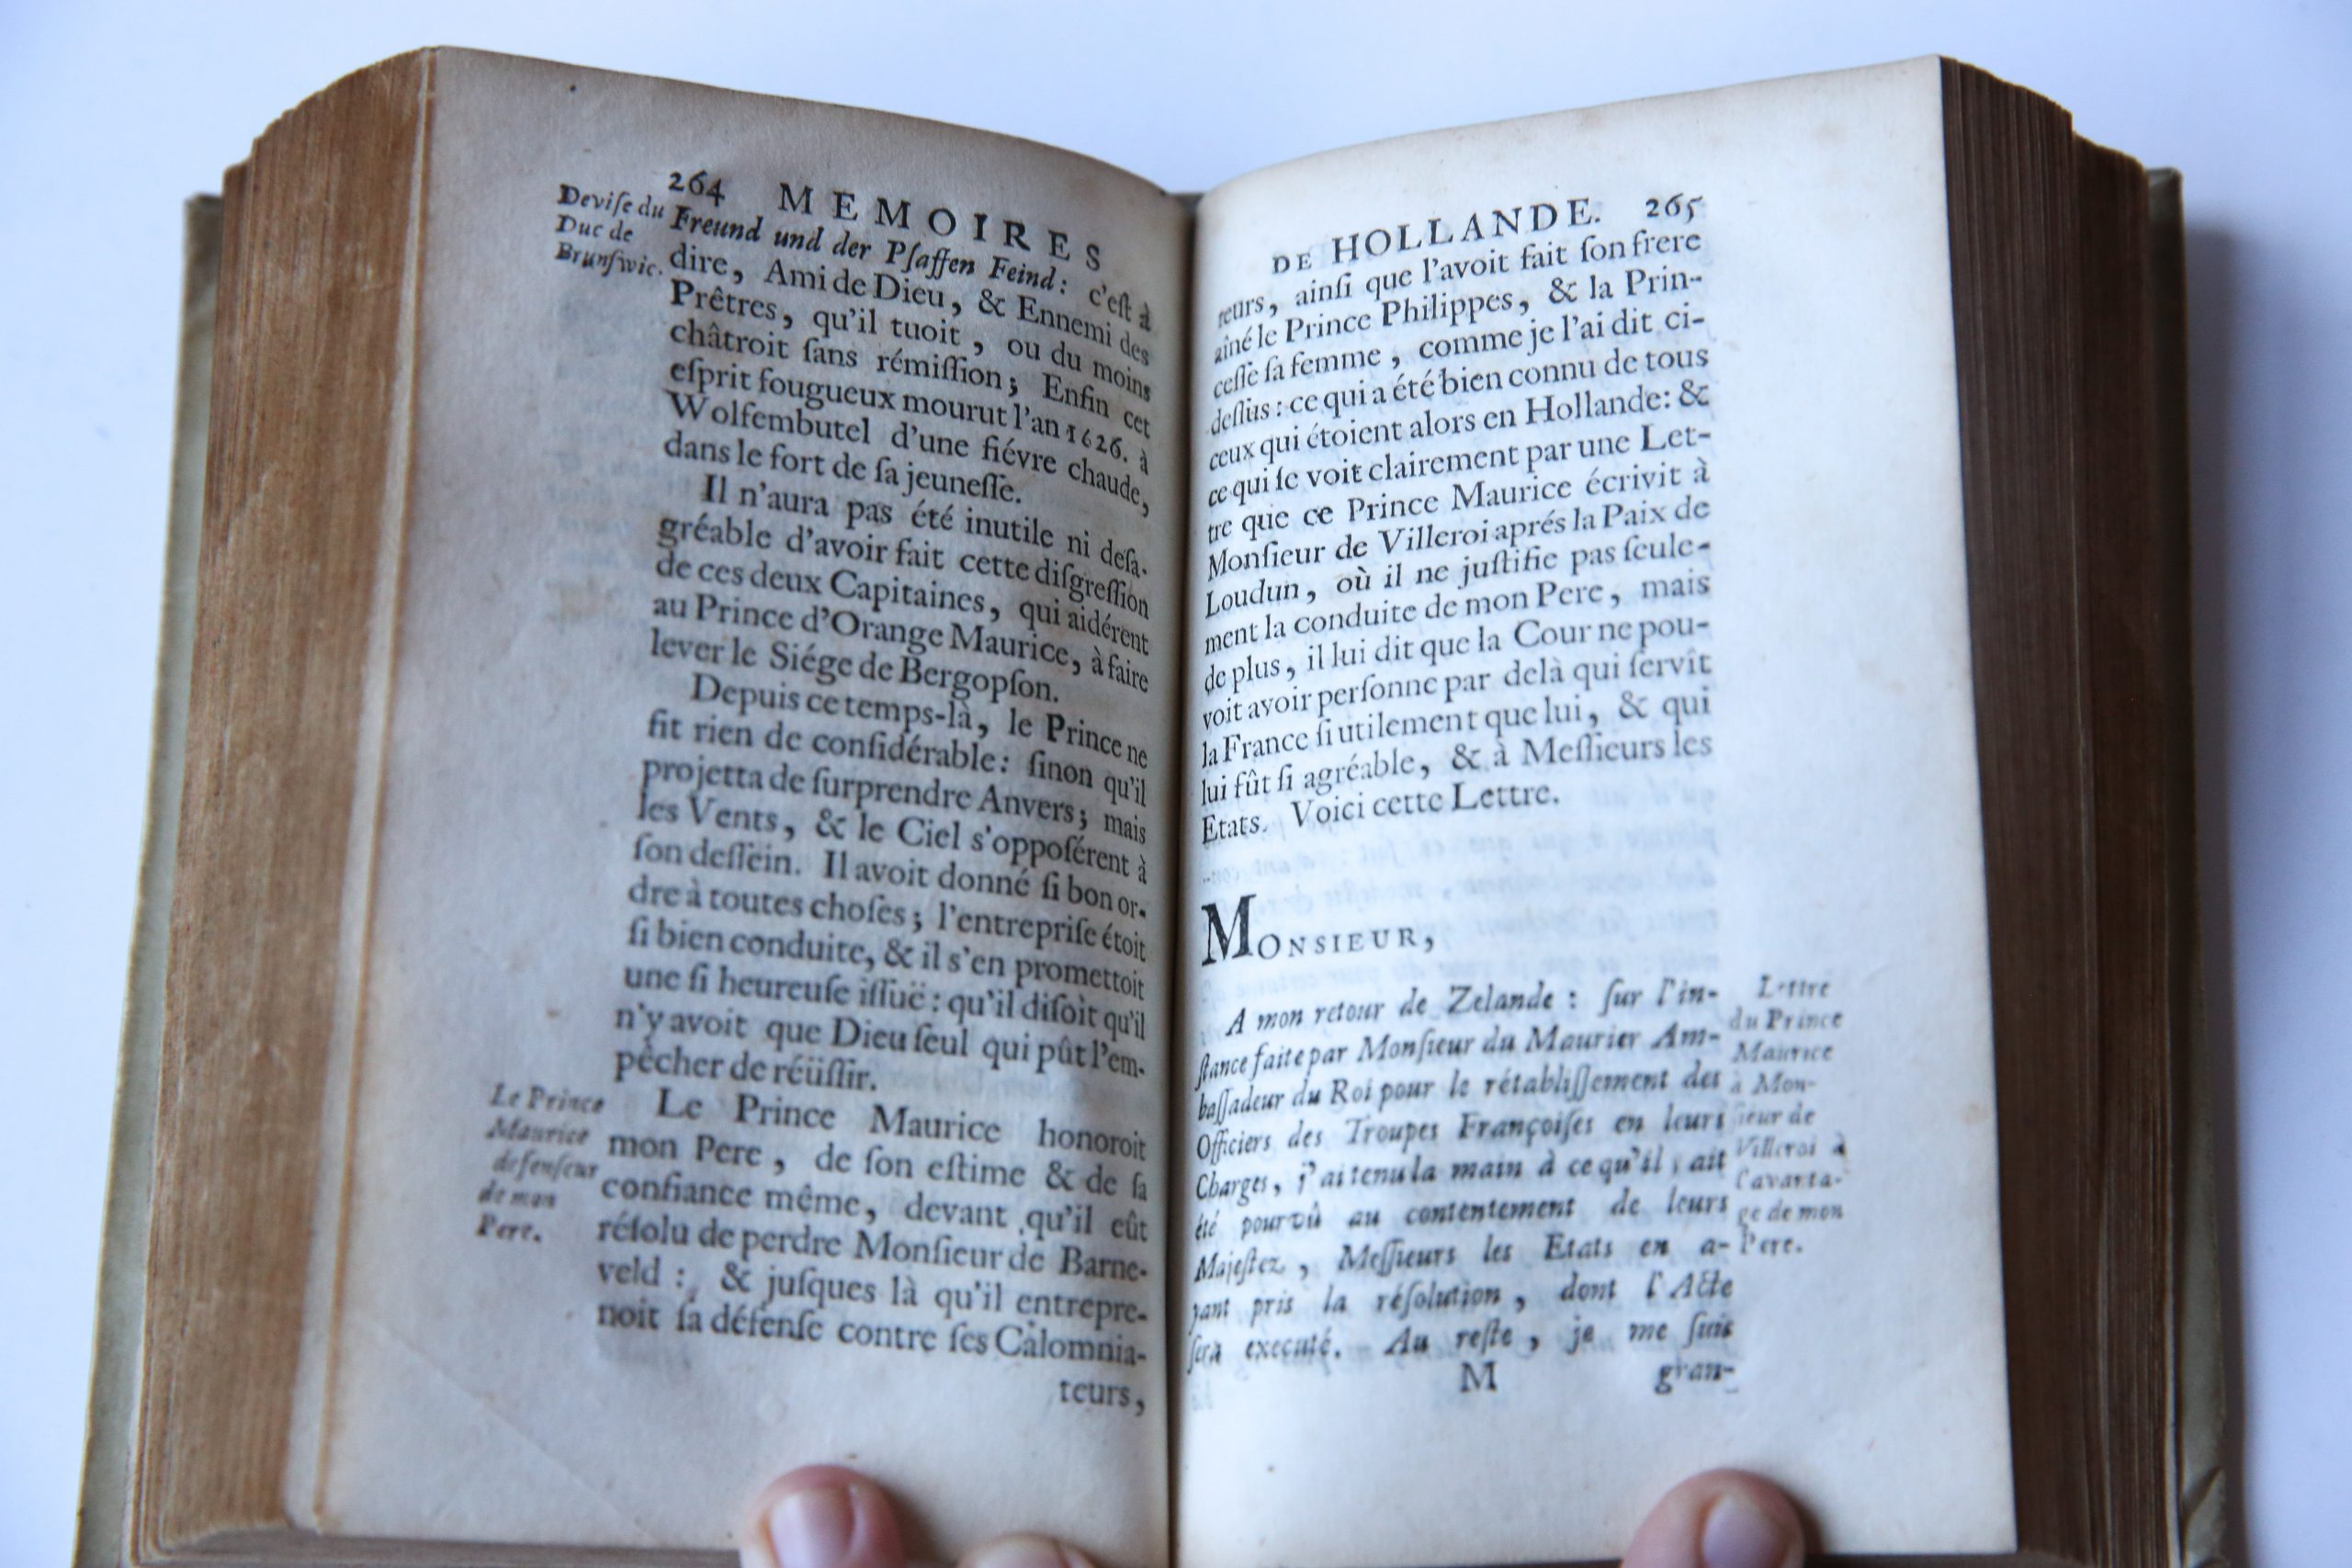 Memoires pour servir a l'histoire de Hollande et des autres provinces-unies, Imprime a la Fleche, a Paris chez Jean Villette, 1697.